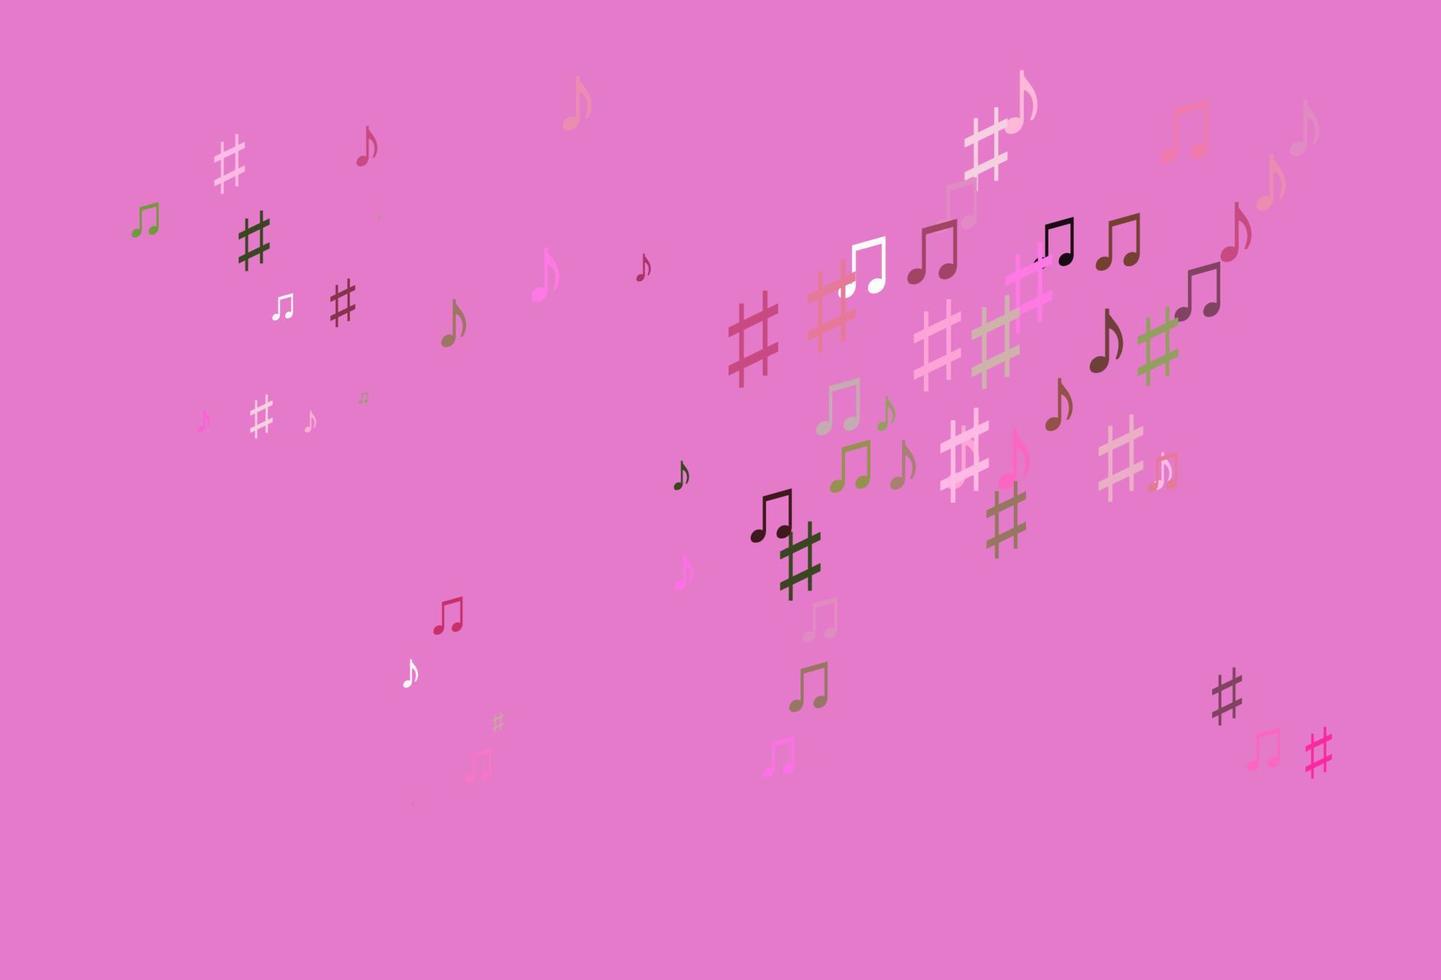 rosa claro, patrón vectorial verde con elementos musicales. vector